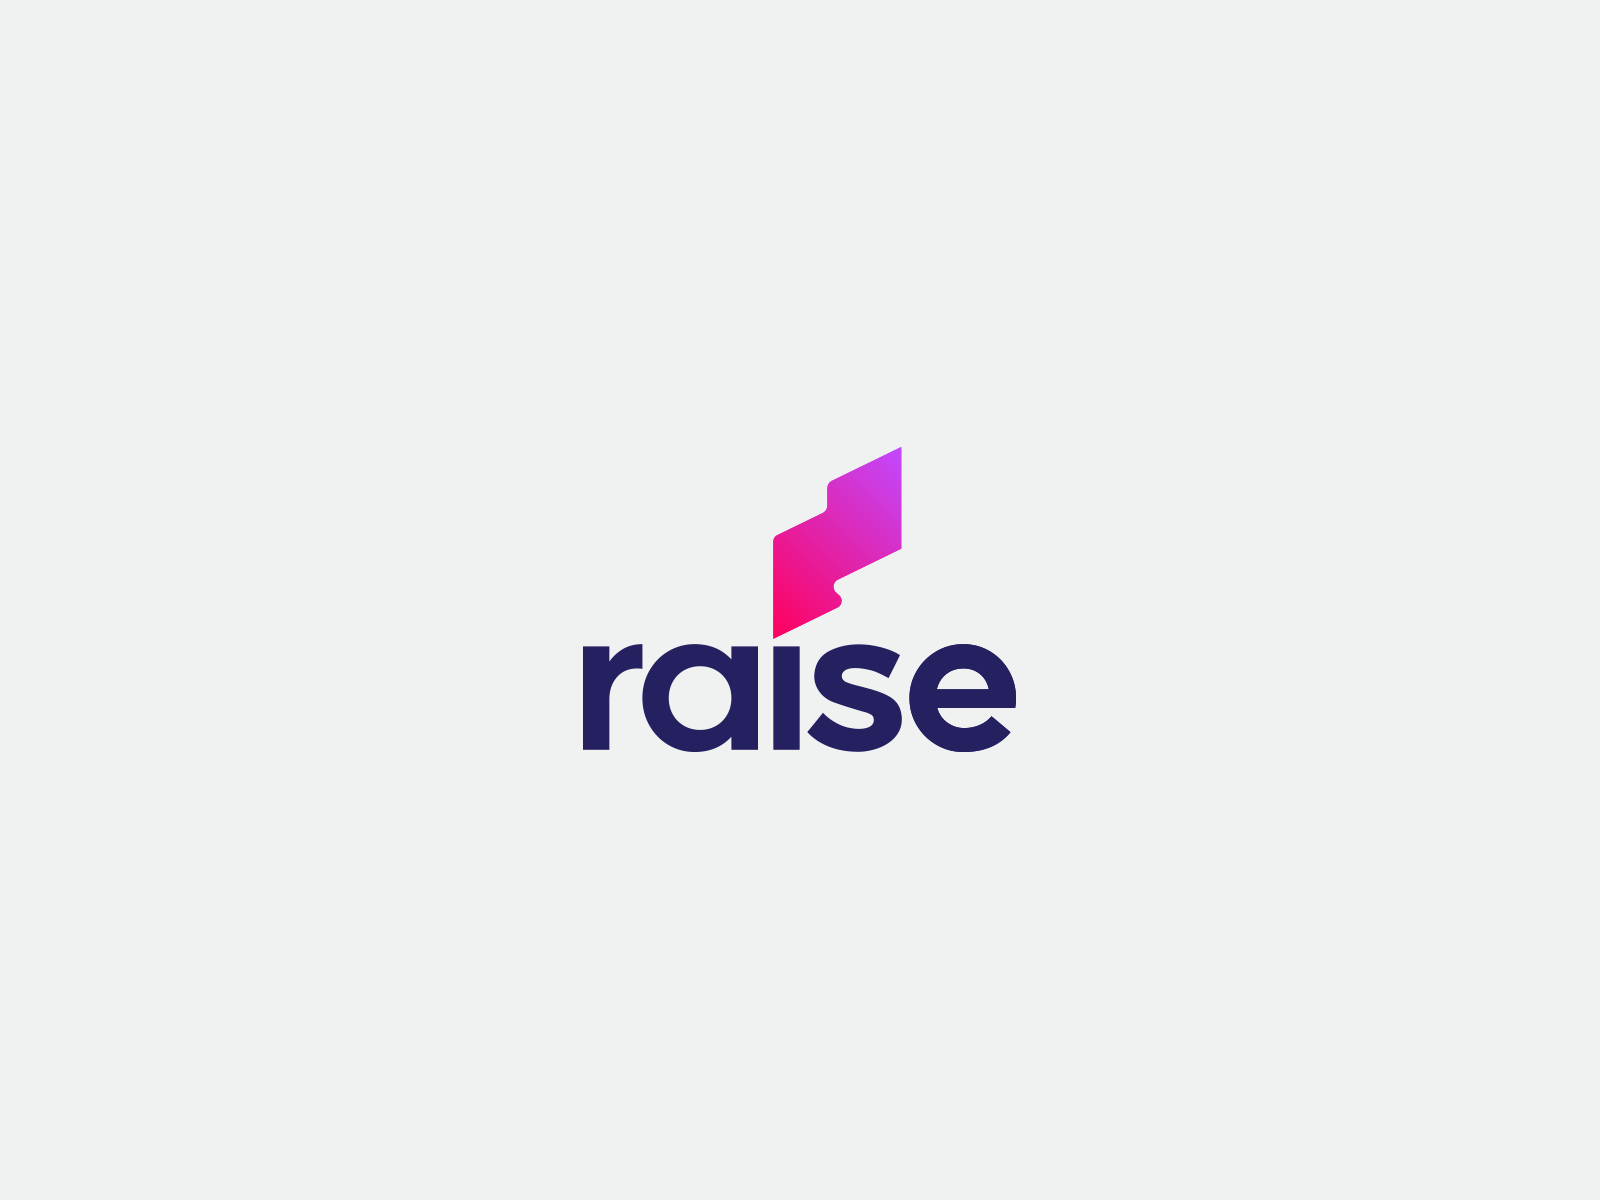 Raisegiving Rebrand